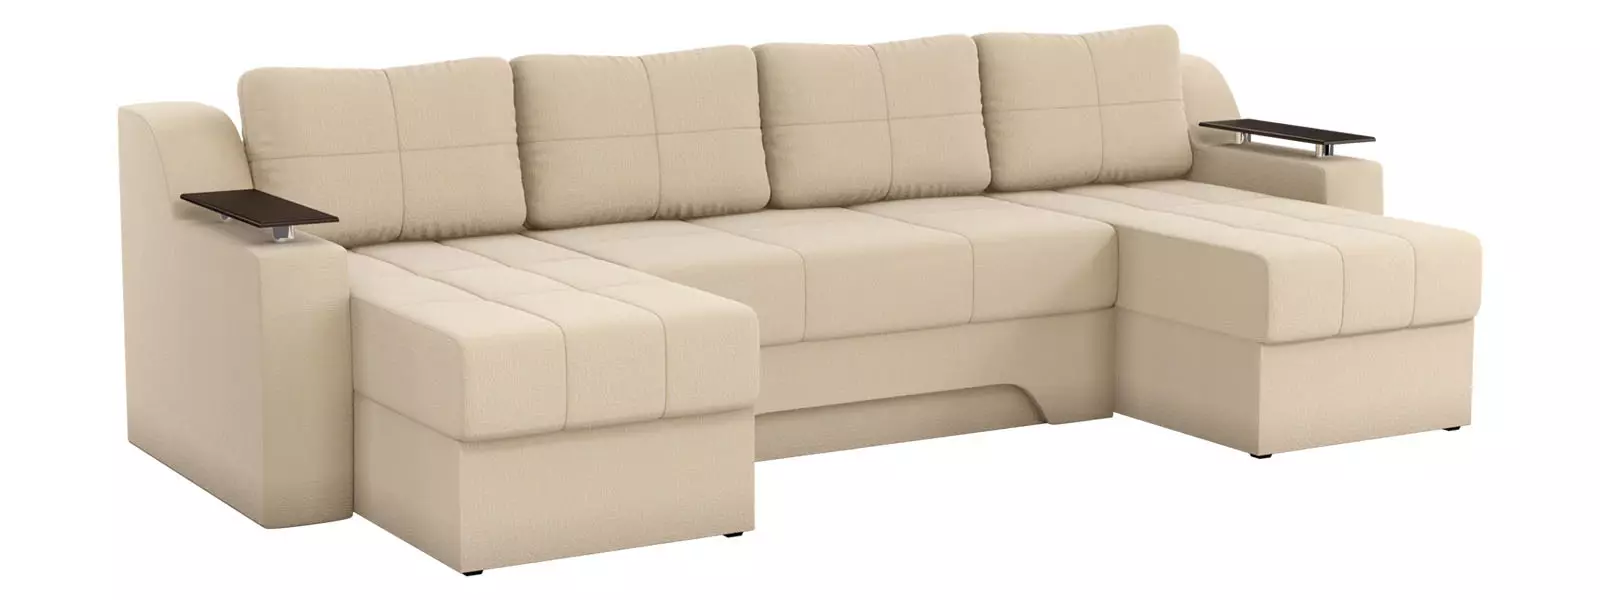 Викатні дивани-ліжка: висувні вперед моделі з ящиками для білизни і без них, дивани з рівним спальним місцем, механізми 9221_13